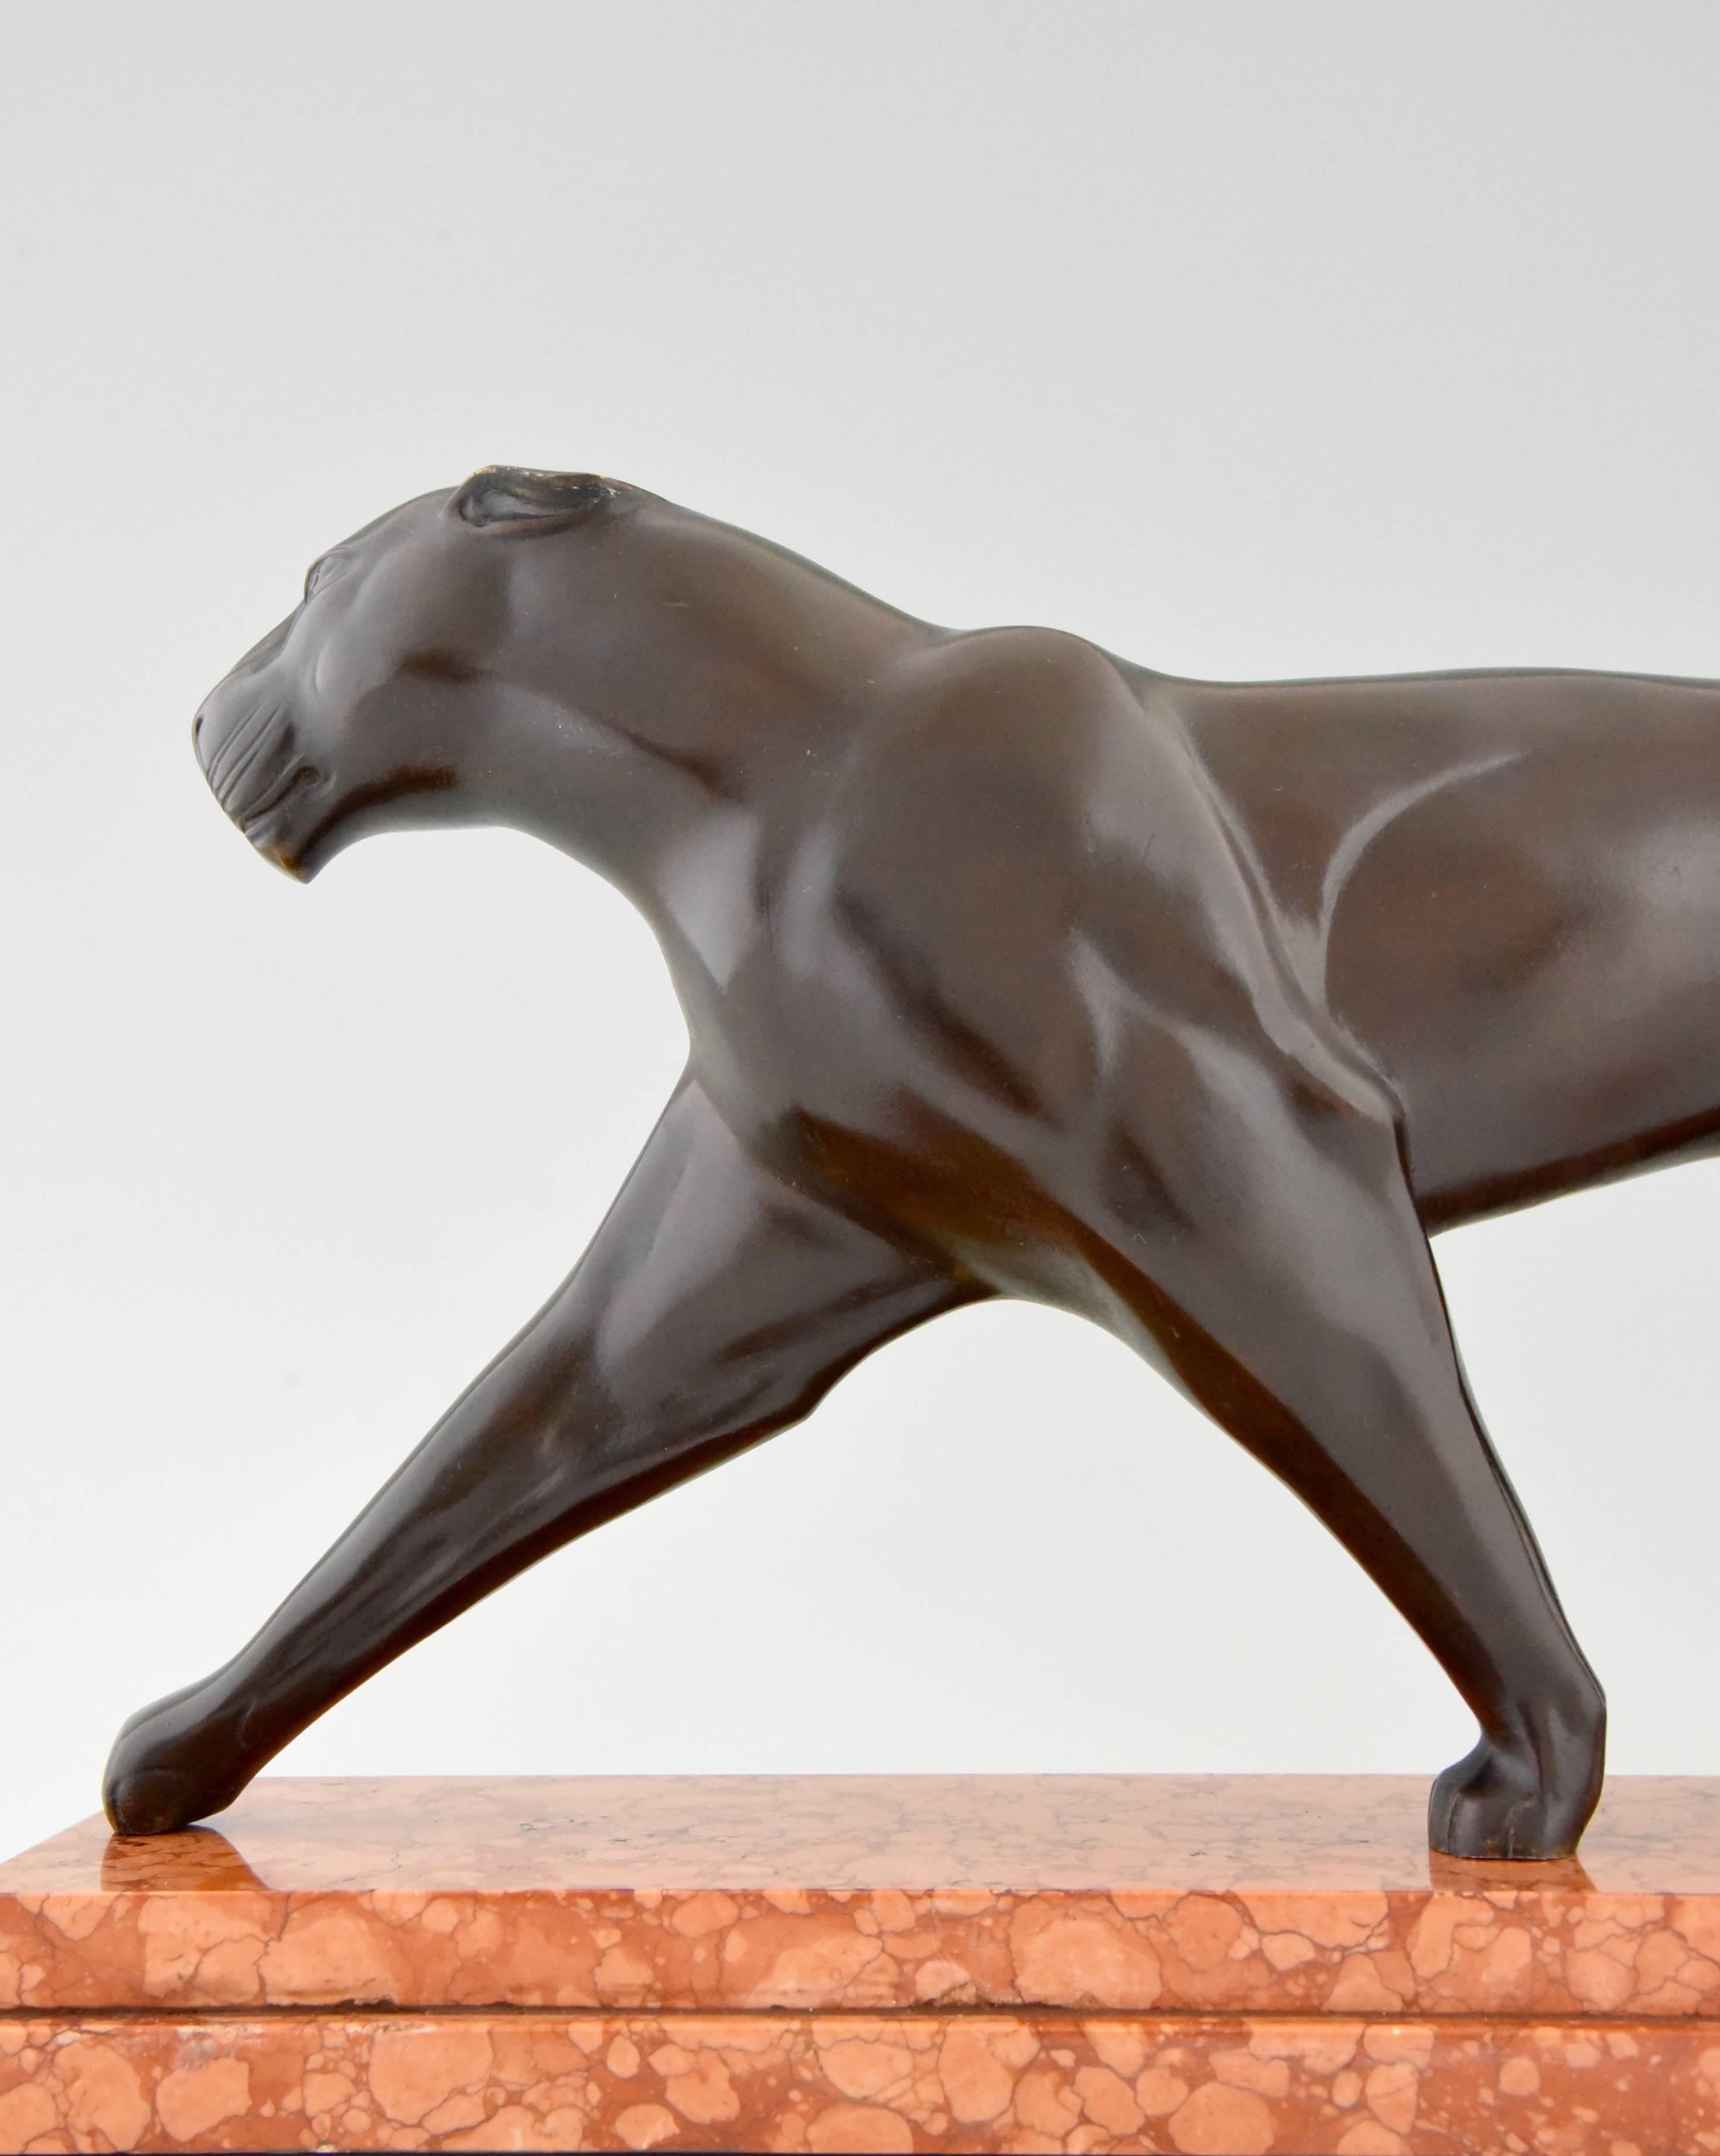 20th Century Michel Decoux Art Deco Bronze Panther Sculpture 1930 France